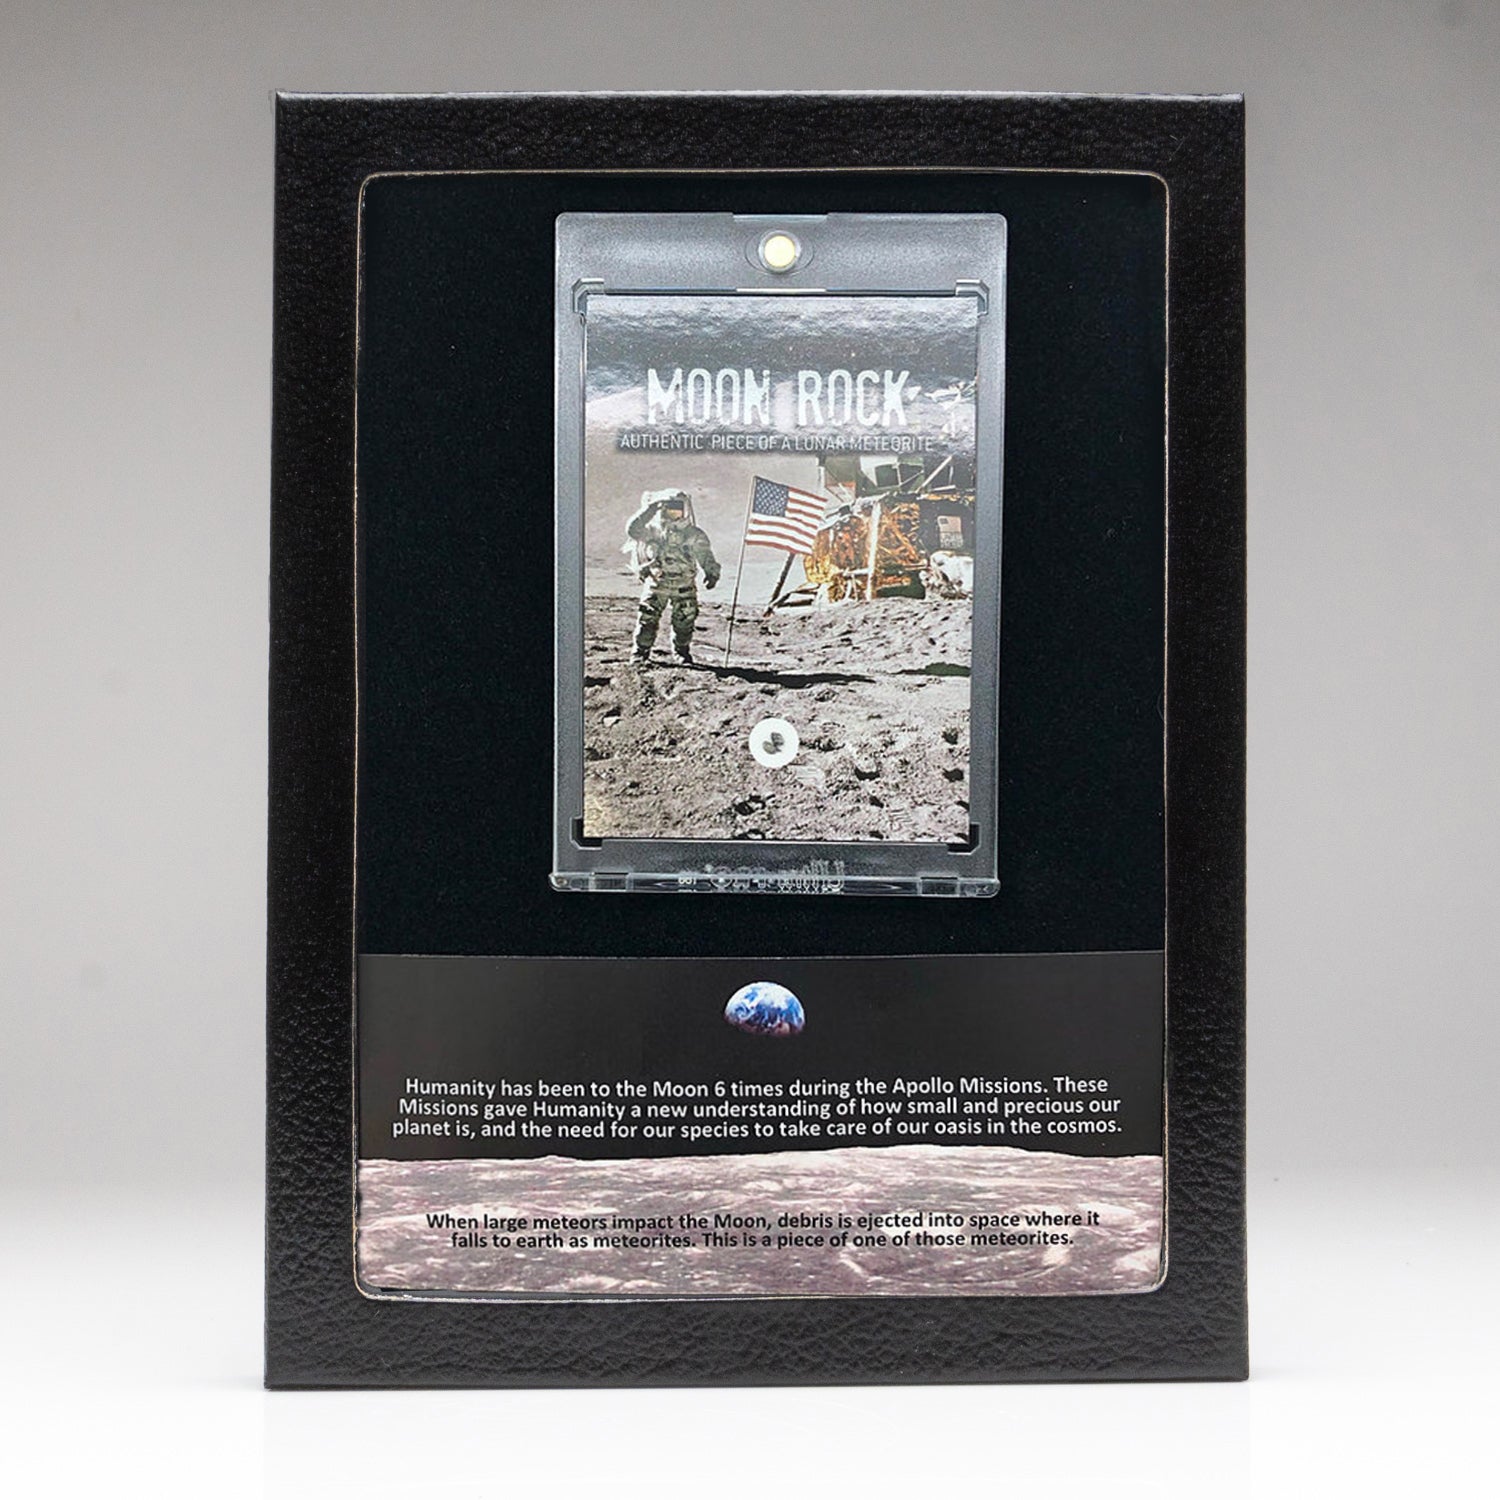 Genuine Mars Rock Lunar Meteorite in Display Box (MR1)